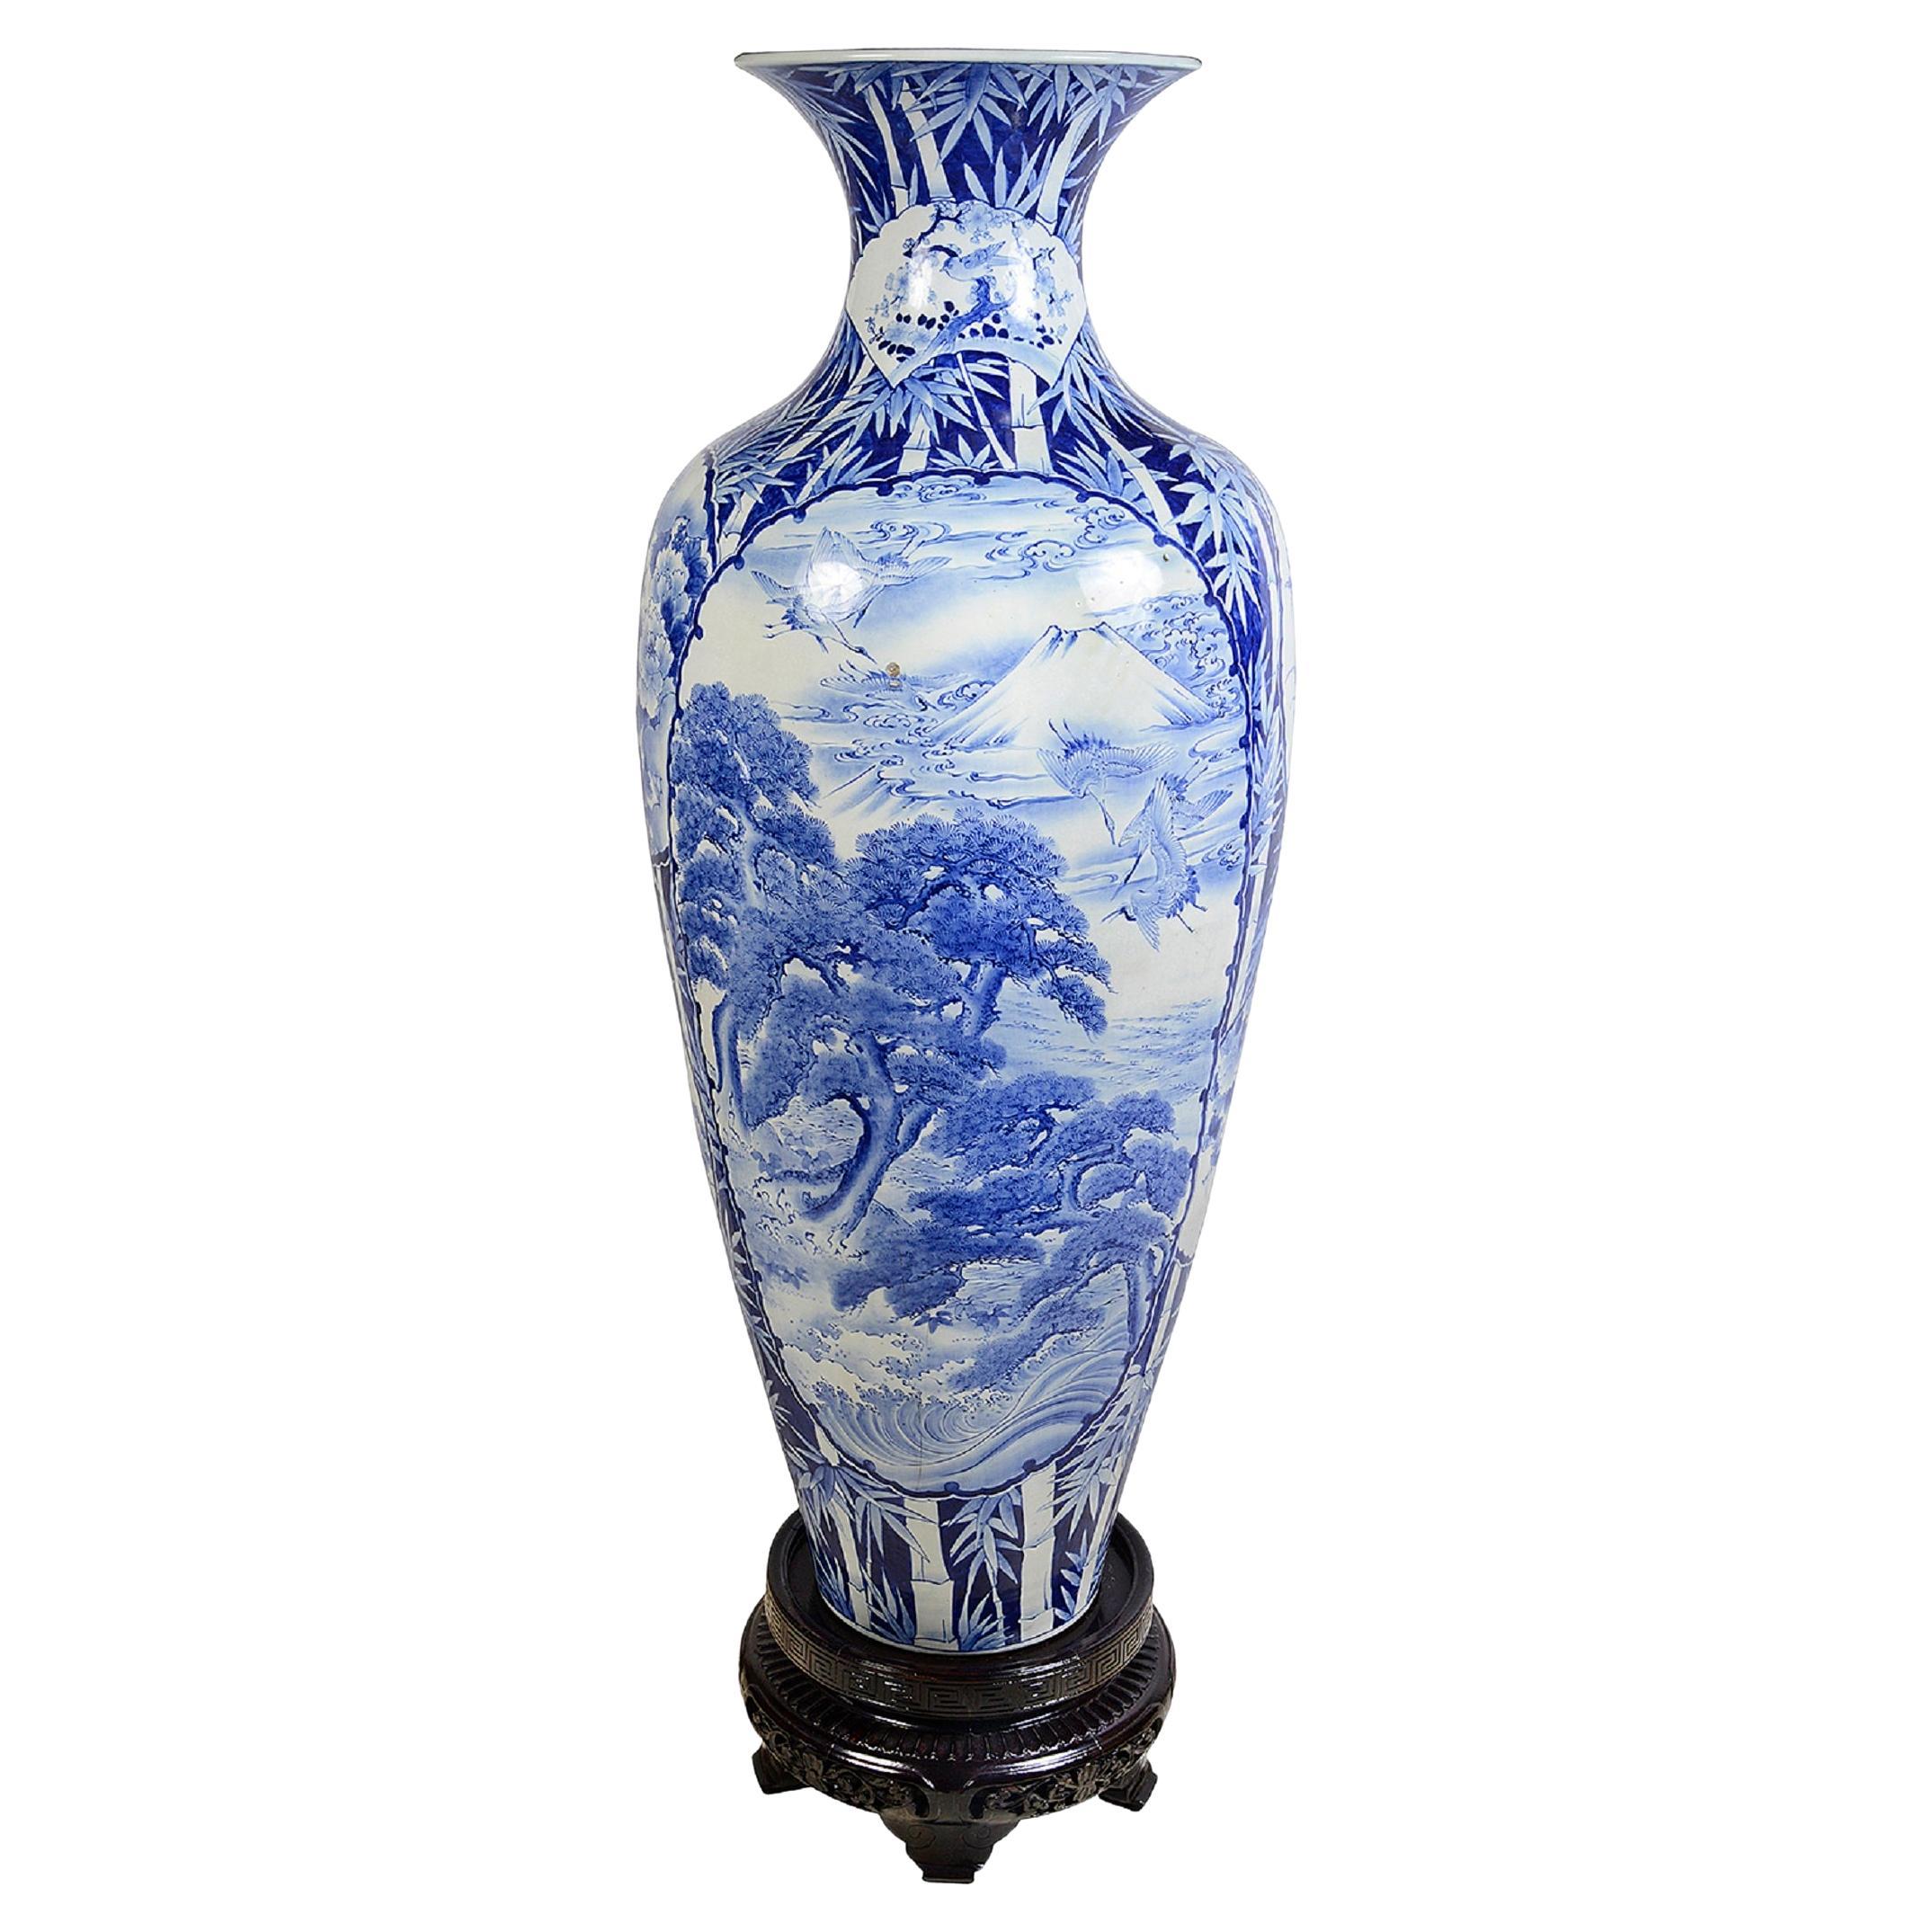 Large 19th Century Blue and White Japanese vase.